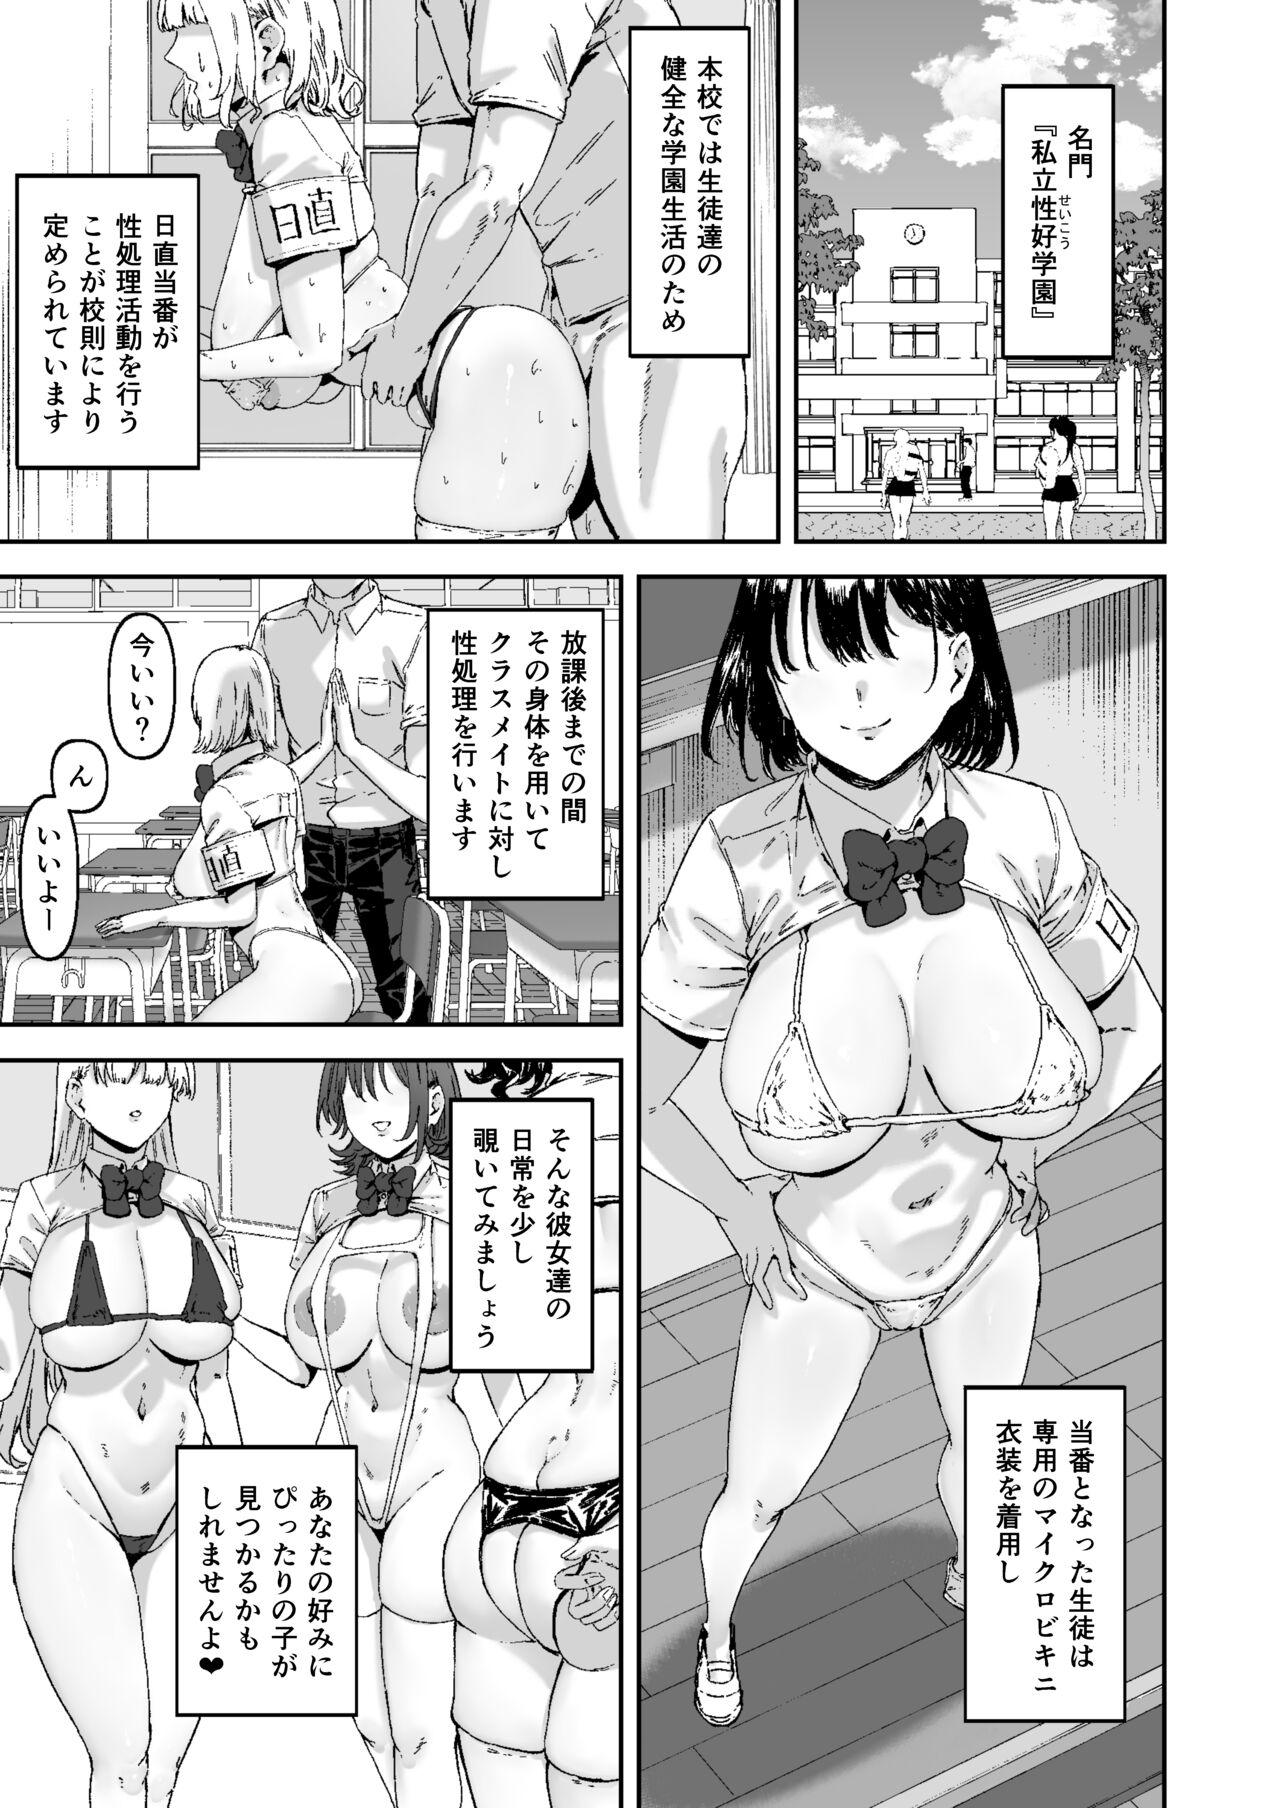 Putaria Nicchoku wa Micro Bikini de - Original Gang - Page 2